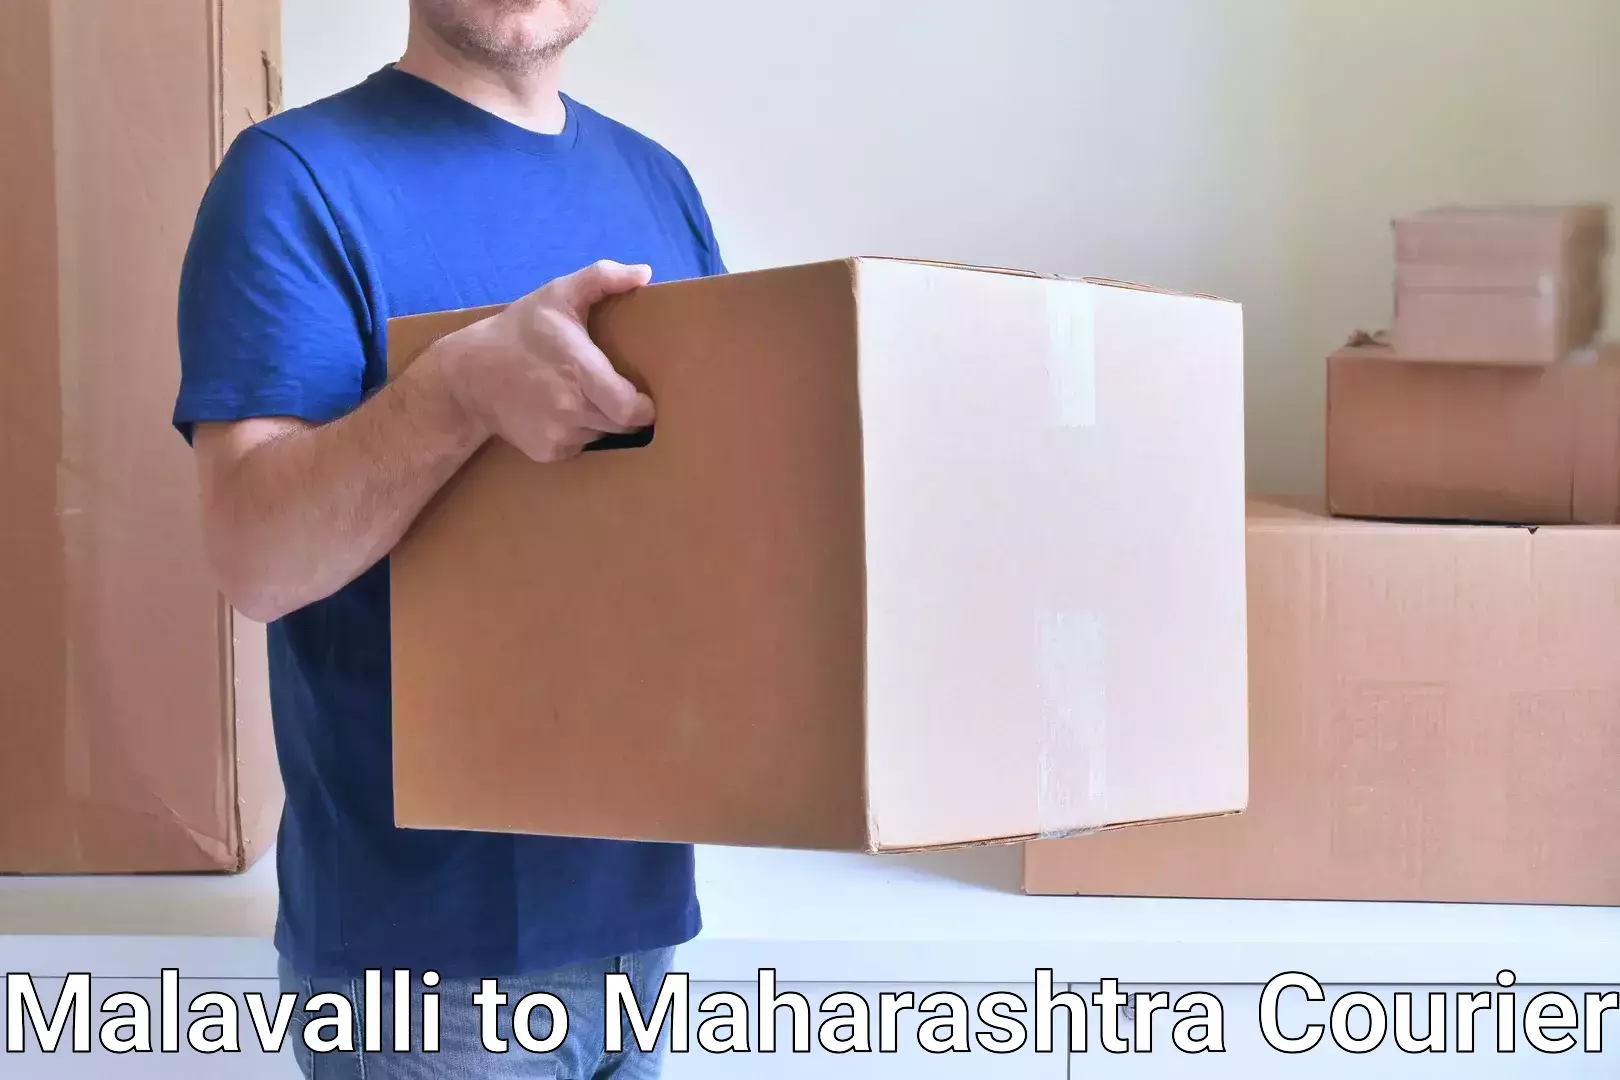 Smart shipping technology Malavalli to Andheri